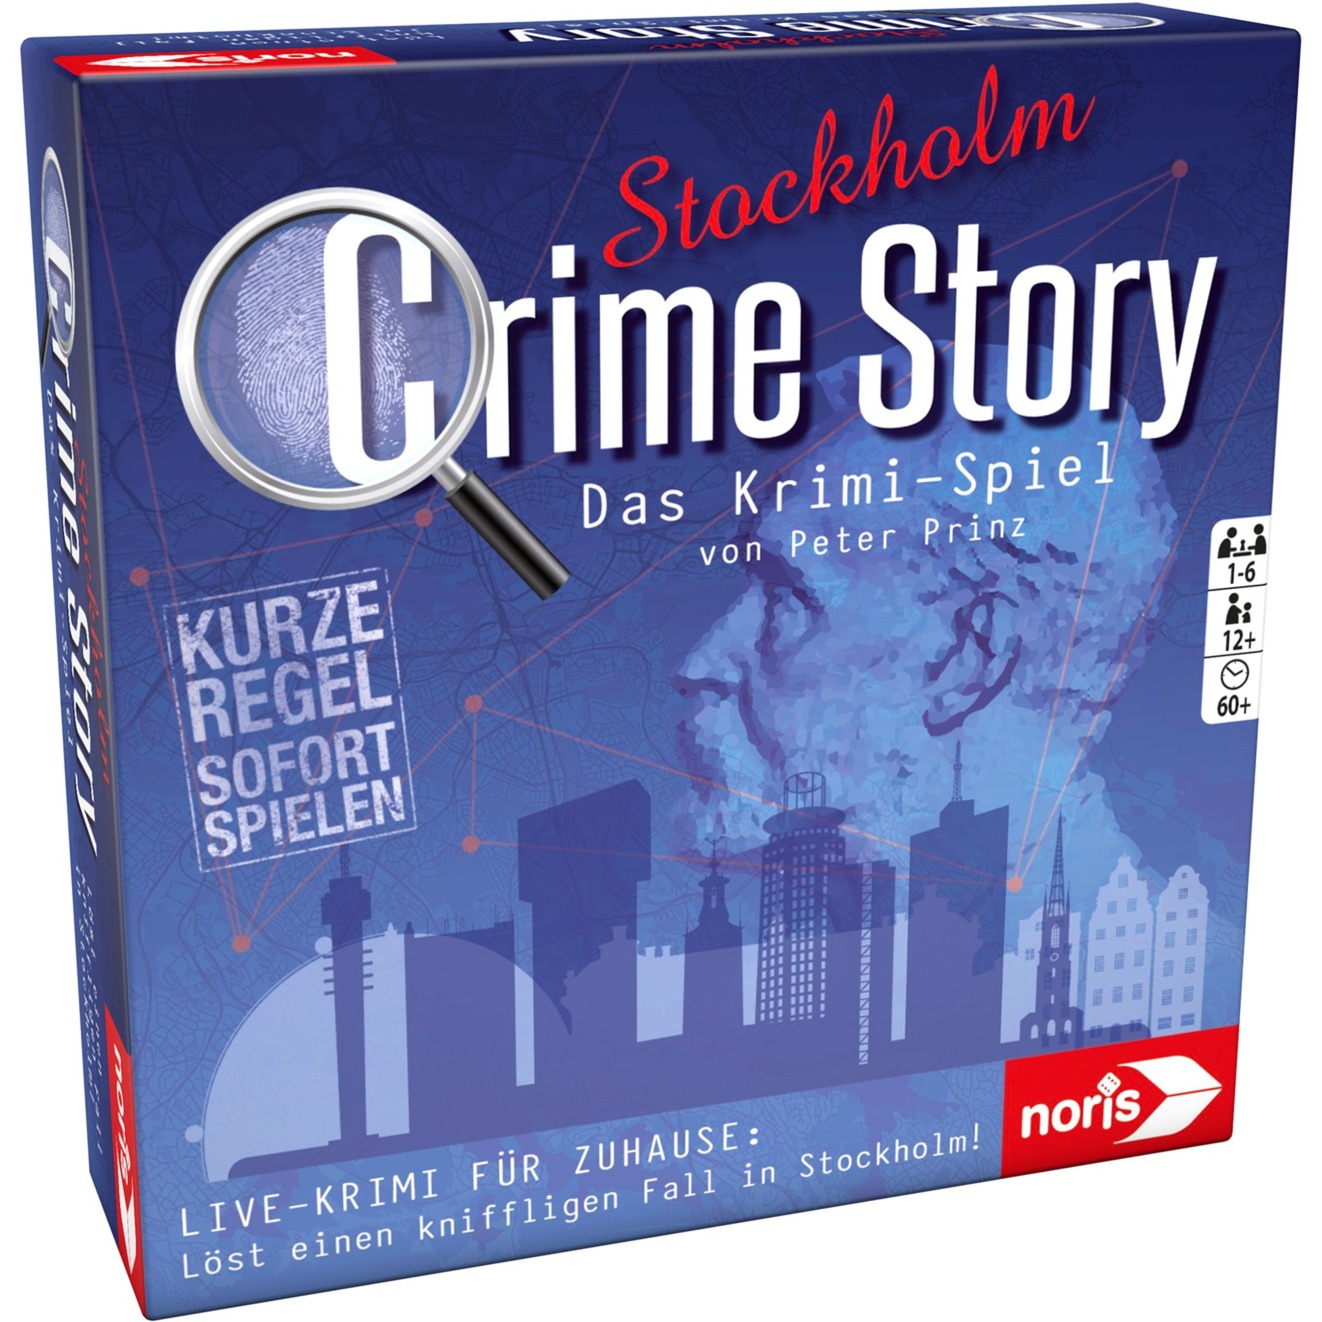 Image of Alternate - Crime Story - Stockholm, Partyspiel online einkaufen bei Alternate